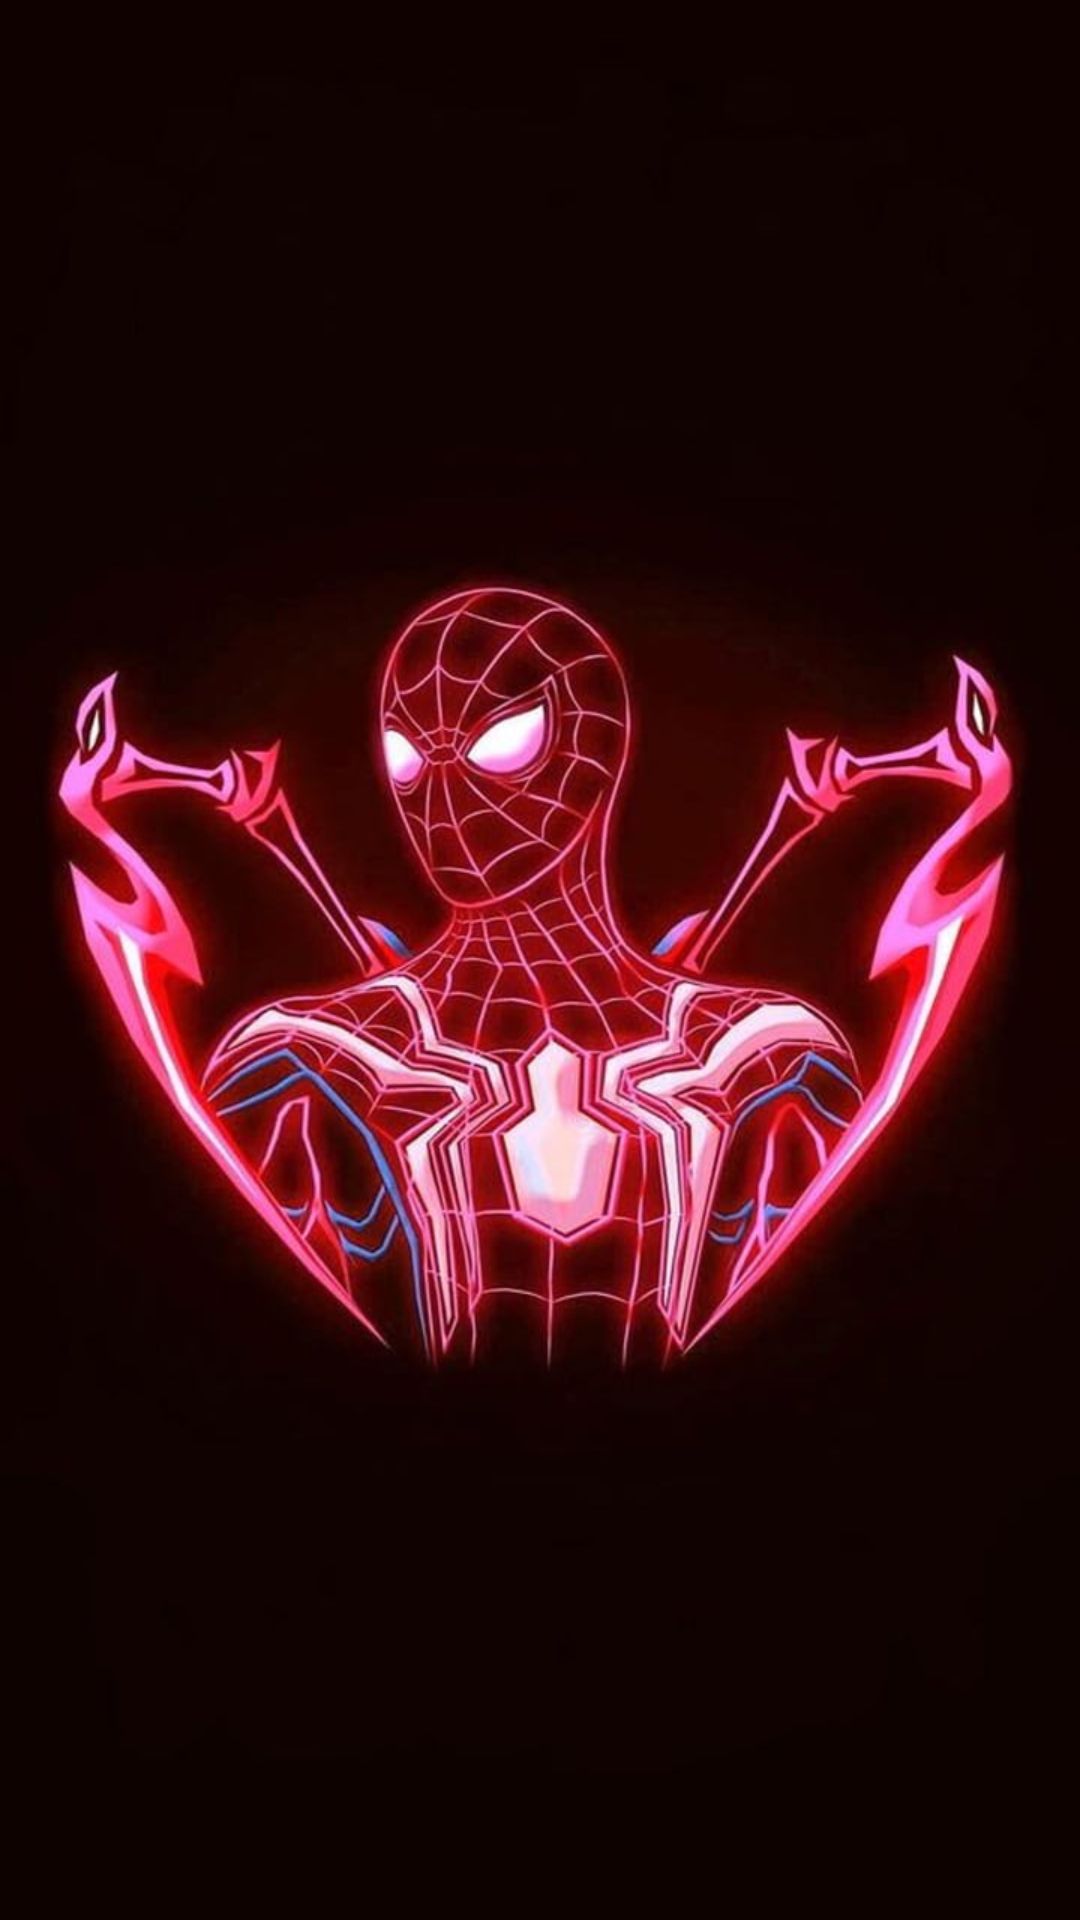 Neon Spider Man Wallpapers - Top 25 Best Neon Spider Man Wallpapers Download